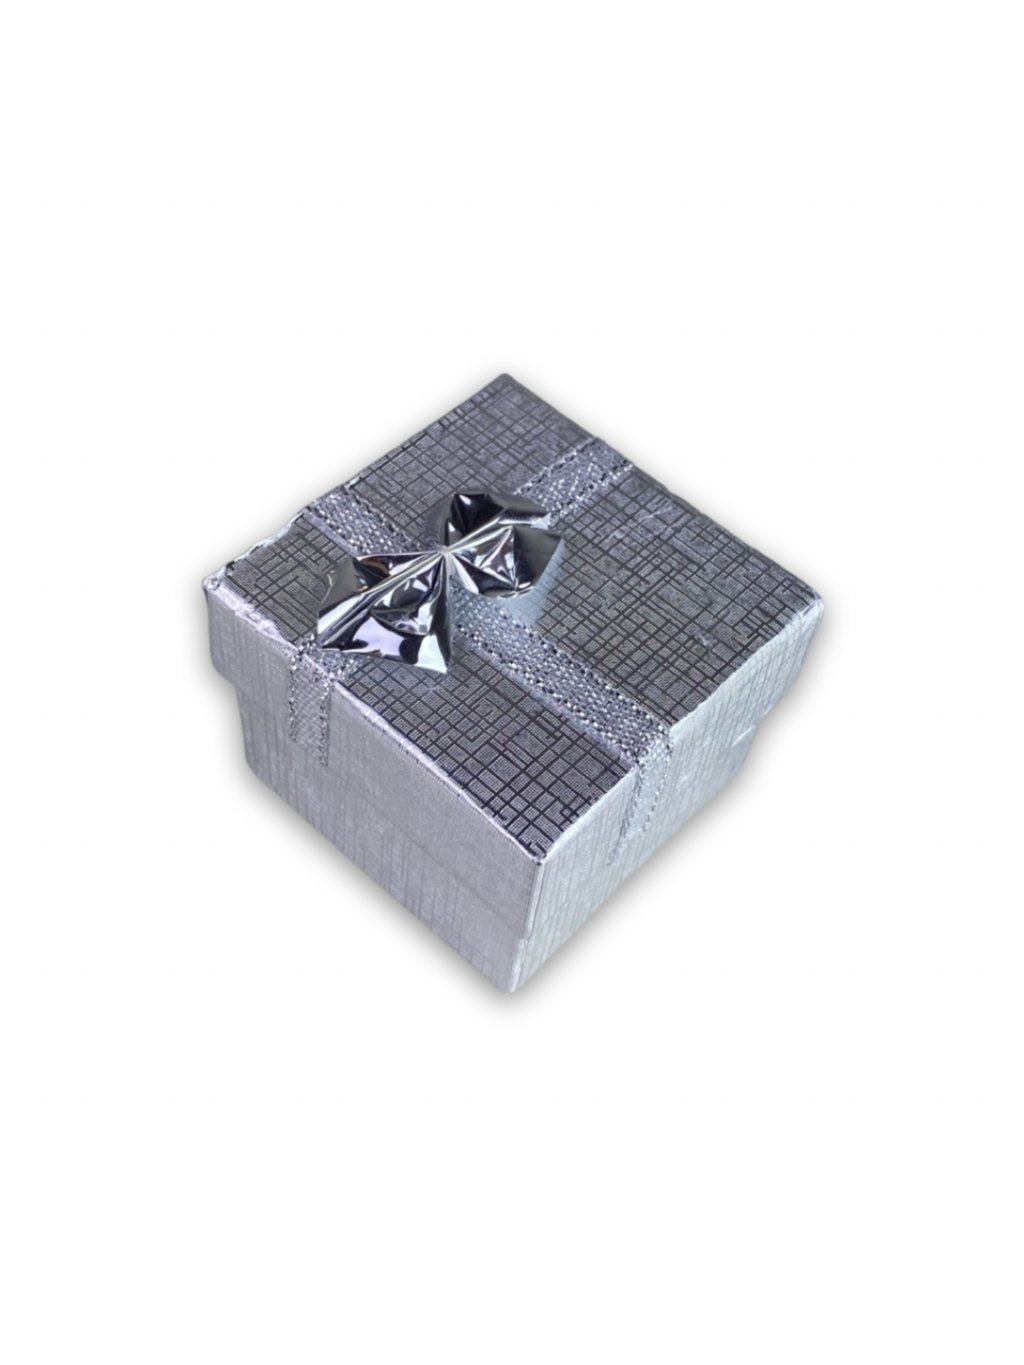 Malá krychlová dárková krabička stříbrné barvy s mašličkou